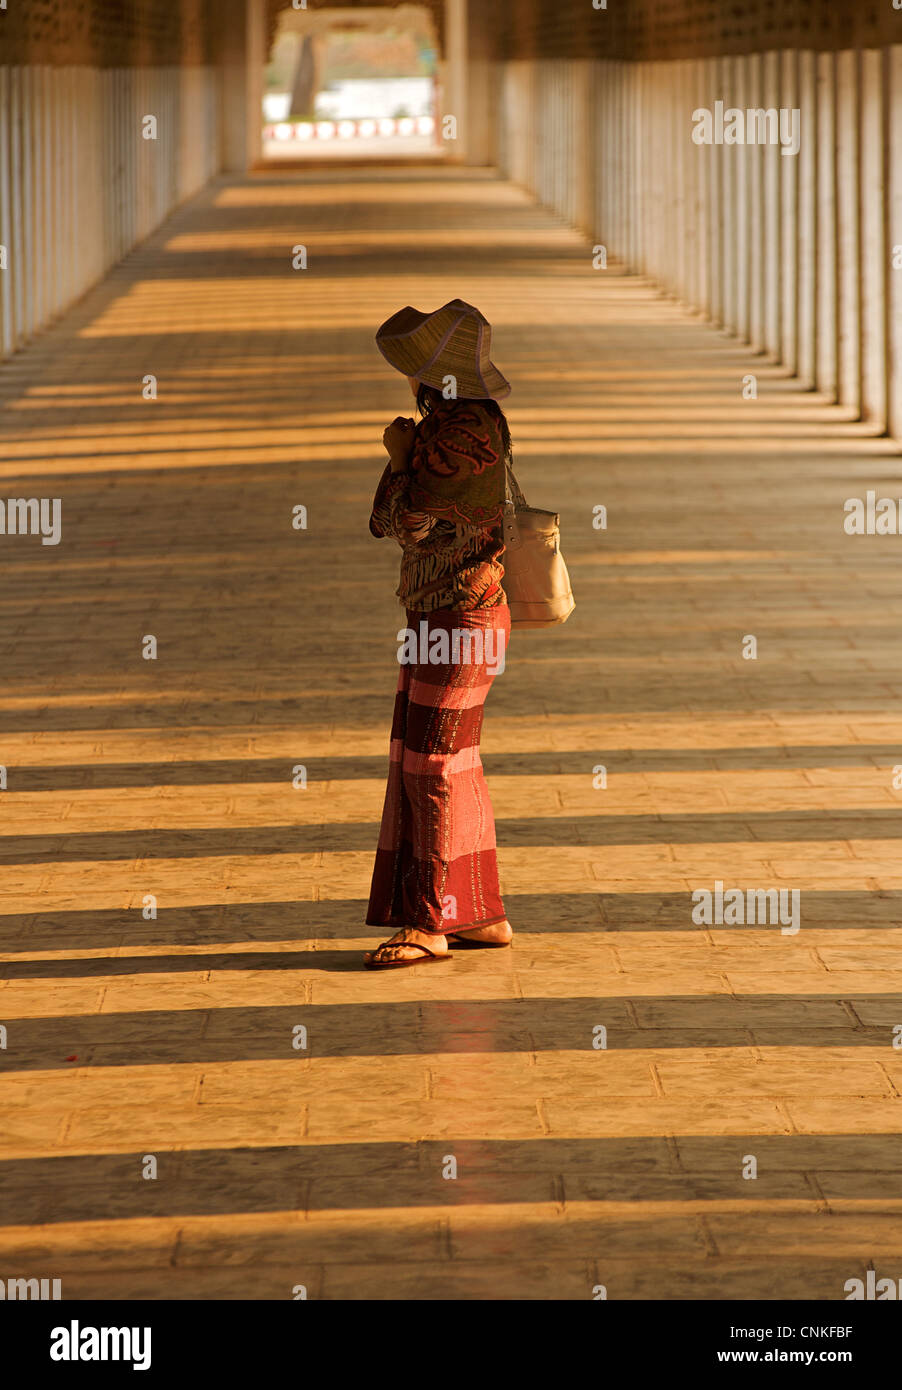 Femme birmane dans le couloir à la Pagode Shwezigon, Bagan. La Birmanie. Parution du modèle. Banque D'Images